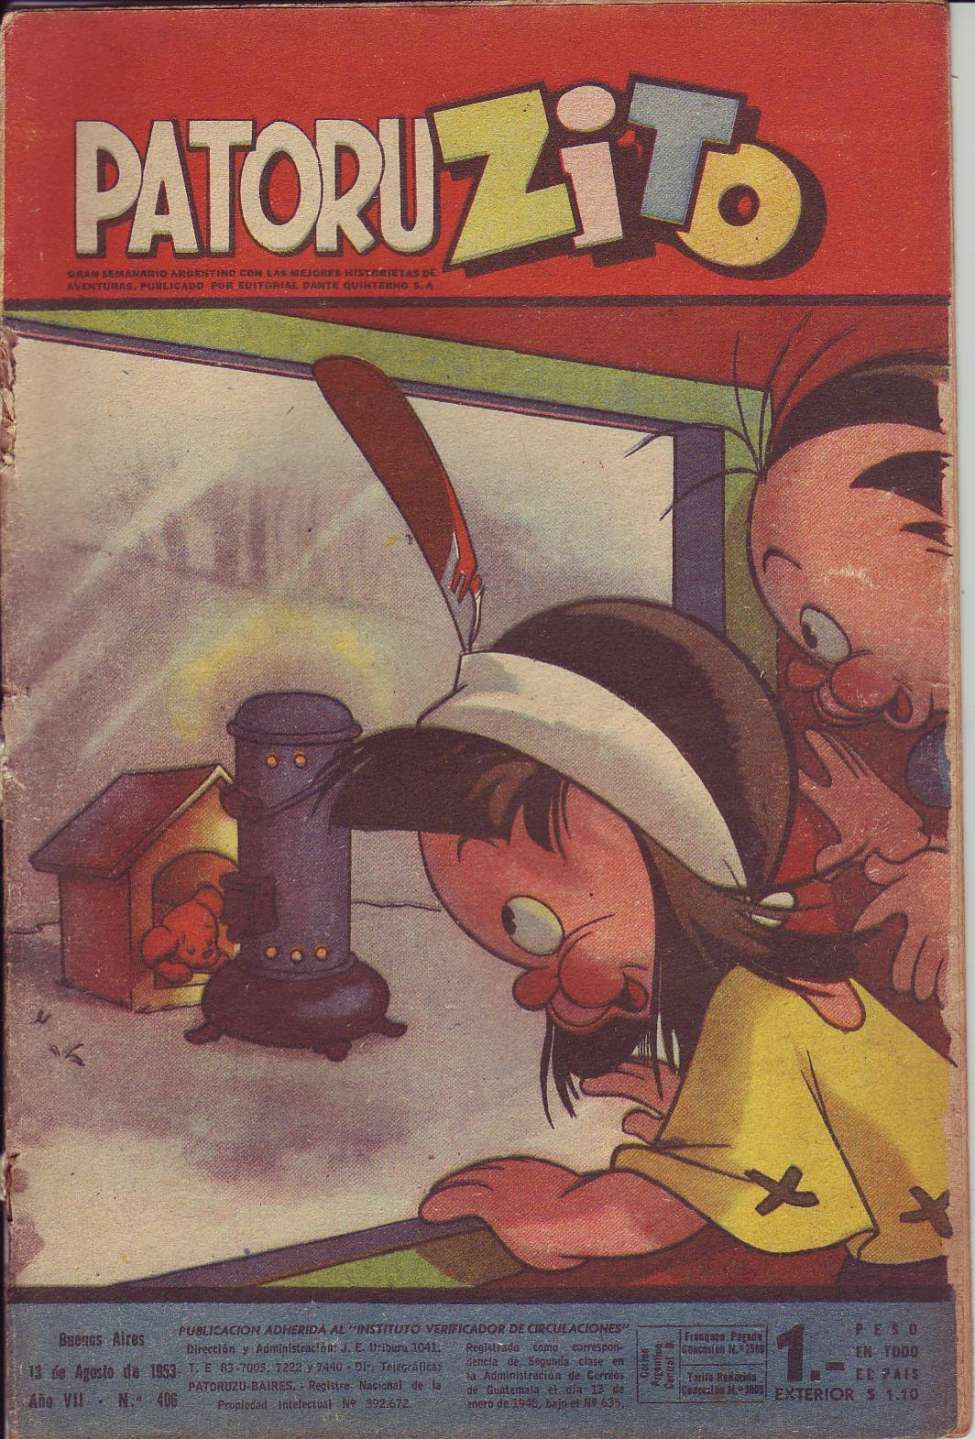 Comic Book Cover For Patoruzito 406